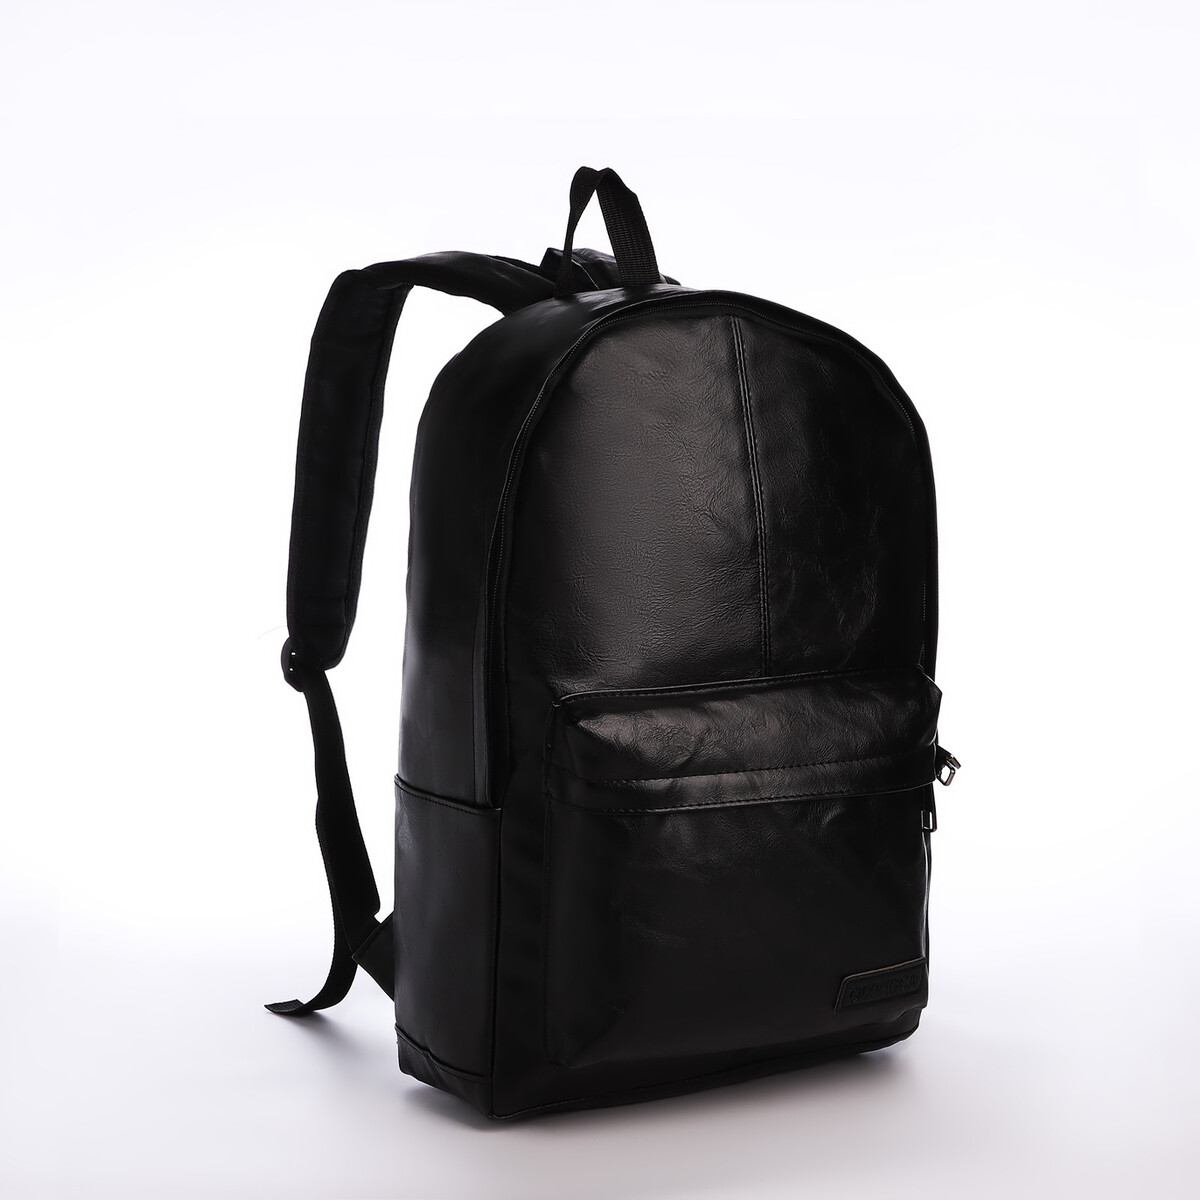 Рюкзак городской из искусственной кожи на молнии, 3 кармана, цвет черный pixie рюкзак городской 267100